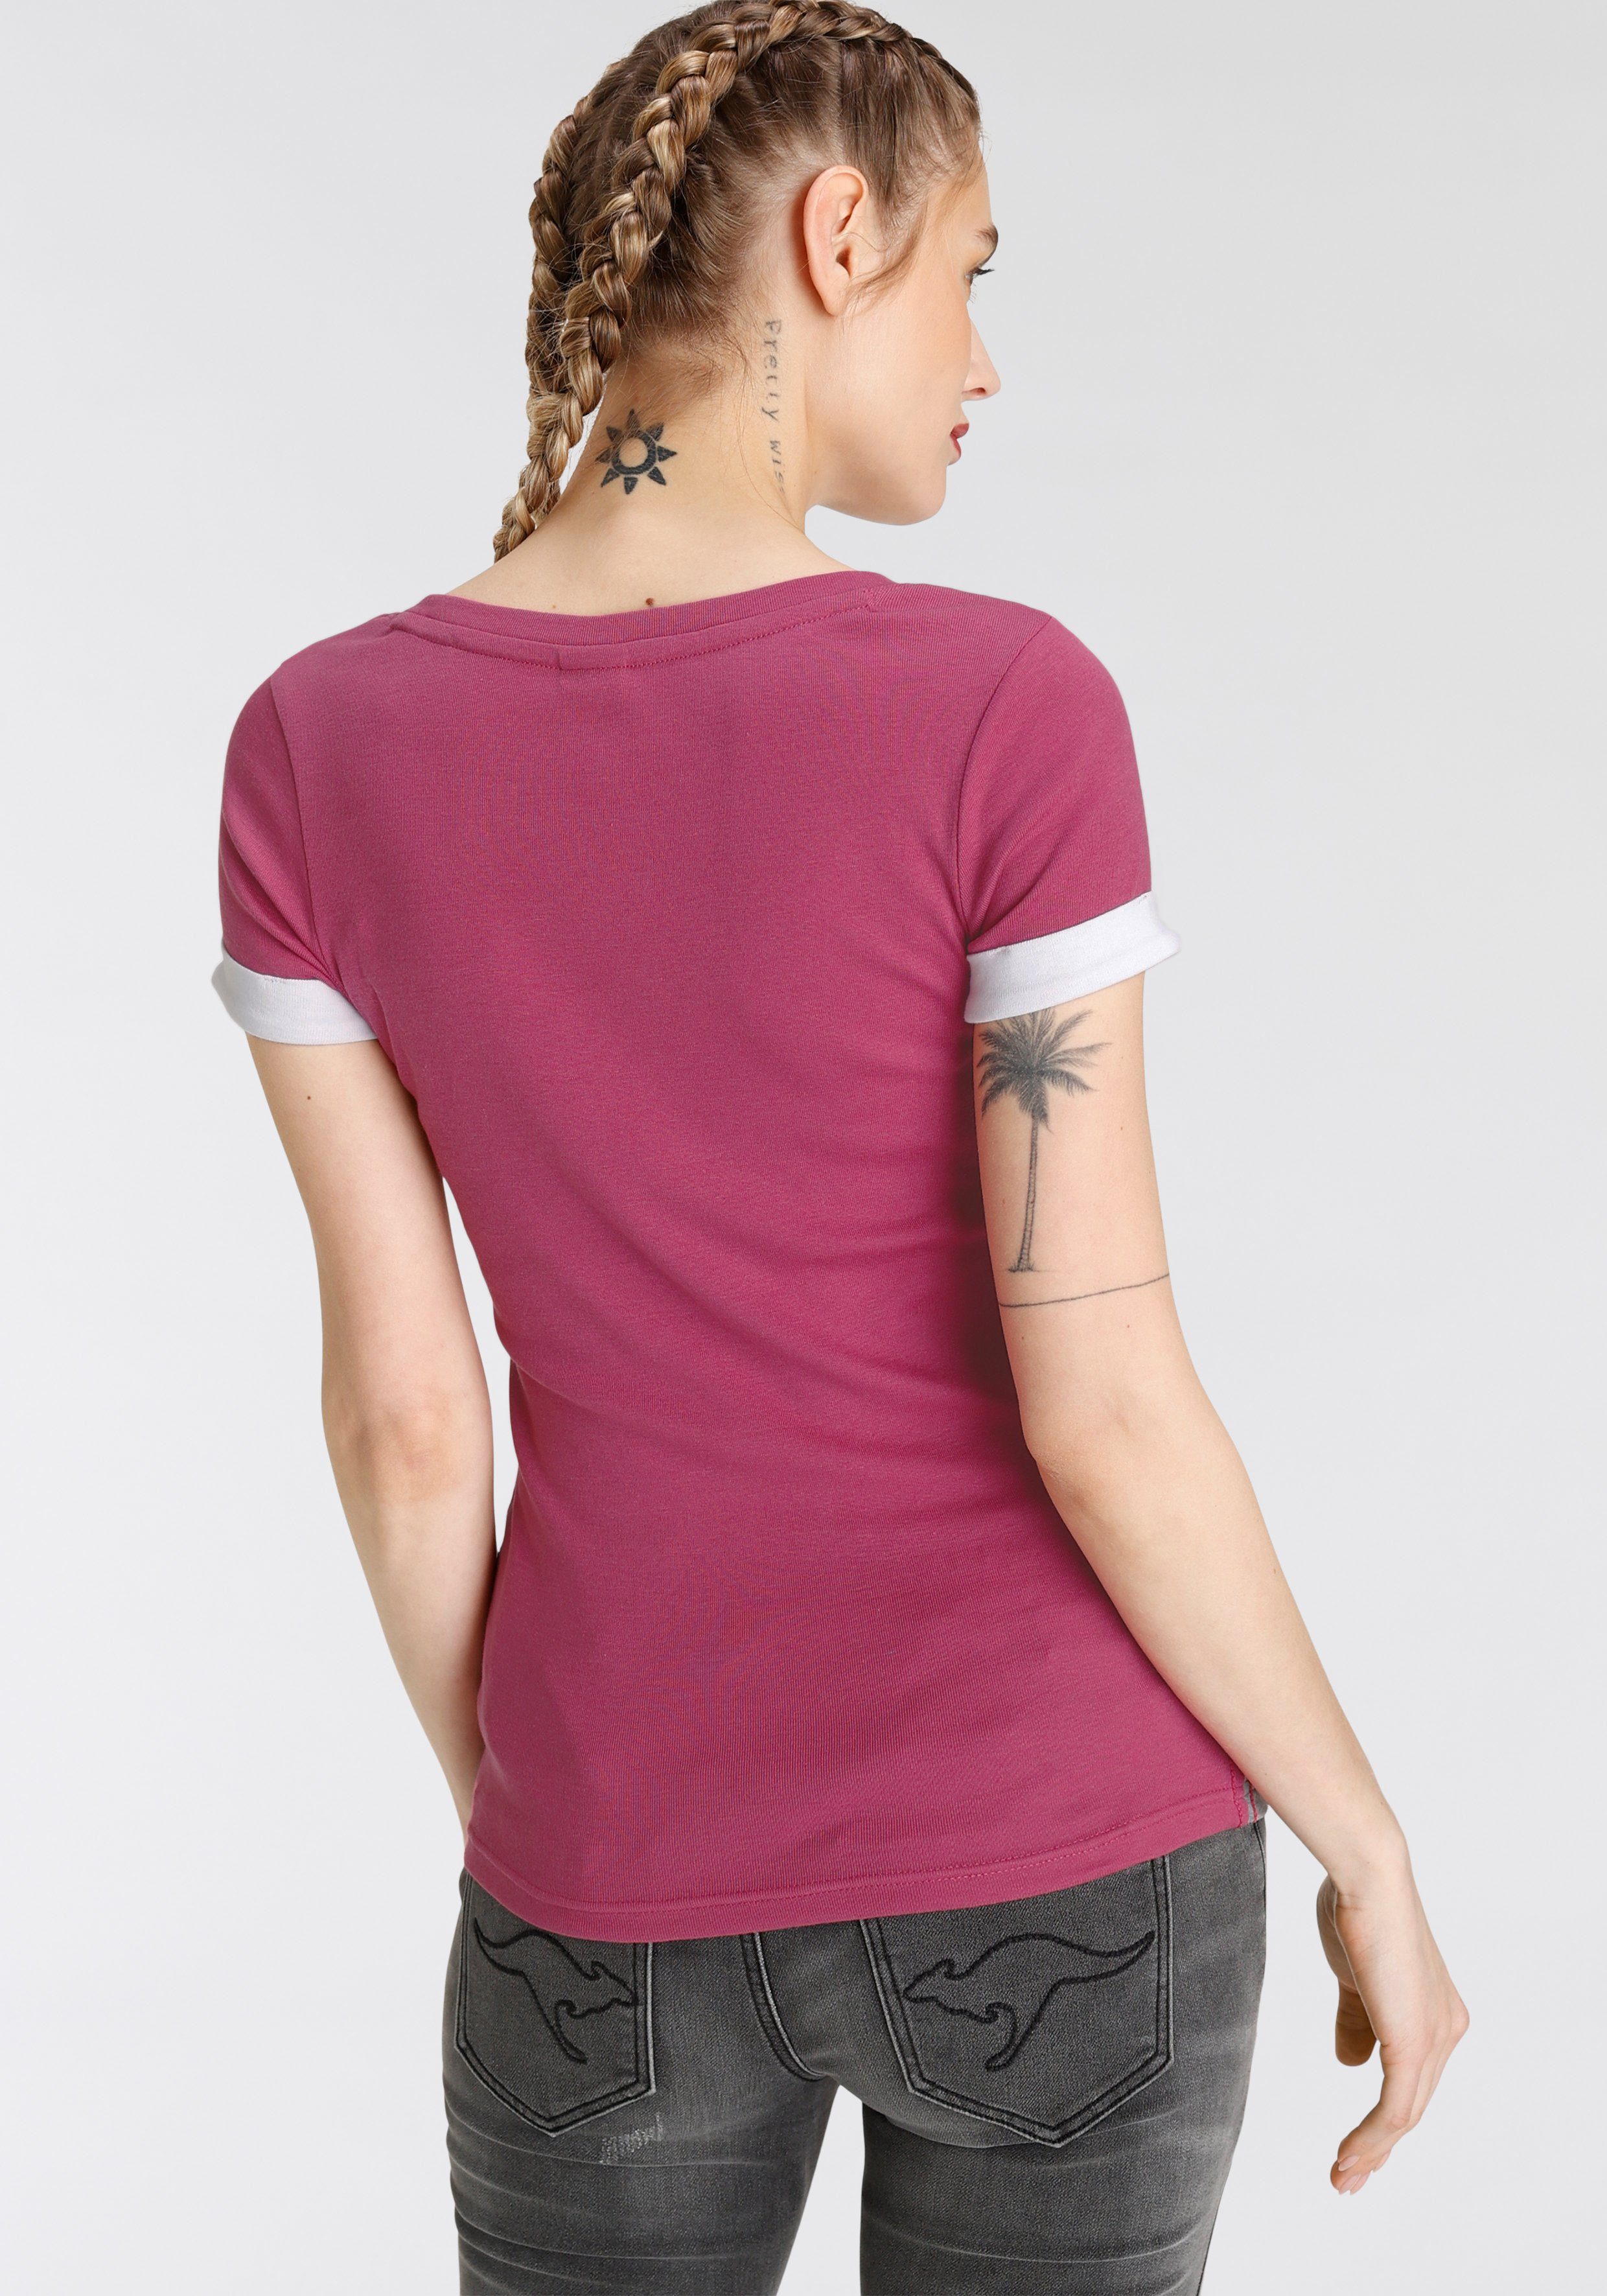 KOLLEKTION & NEUE trendigen Streifen im Colorblocking-Mix - T-Shirt KangaROOS